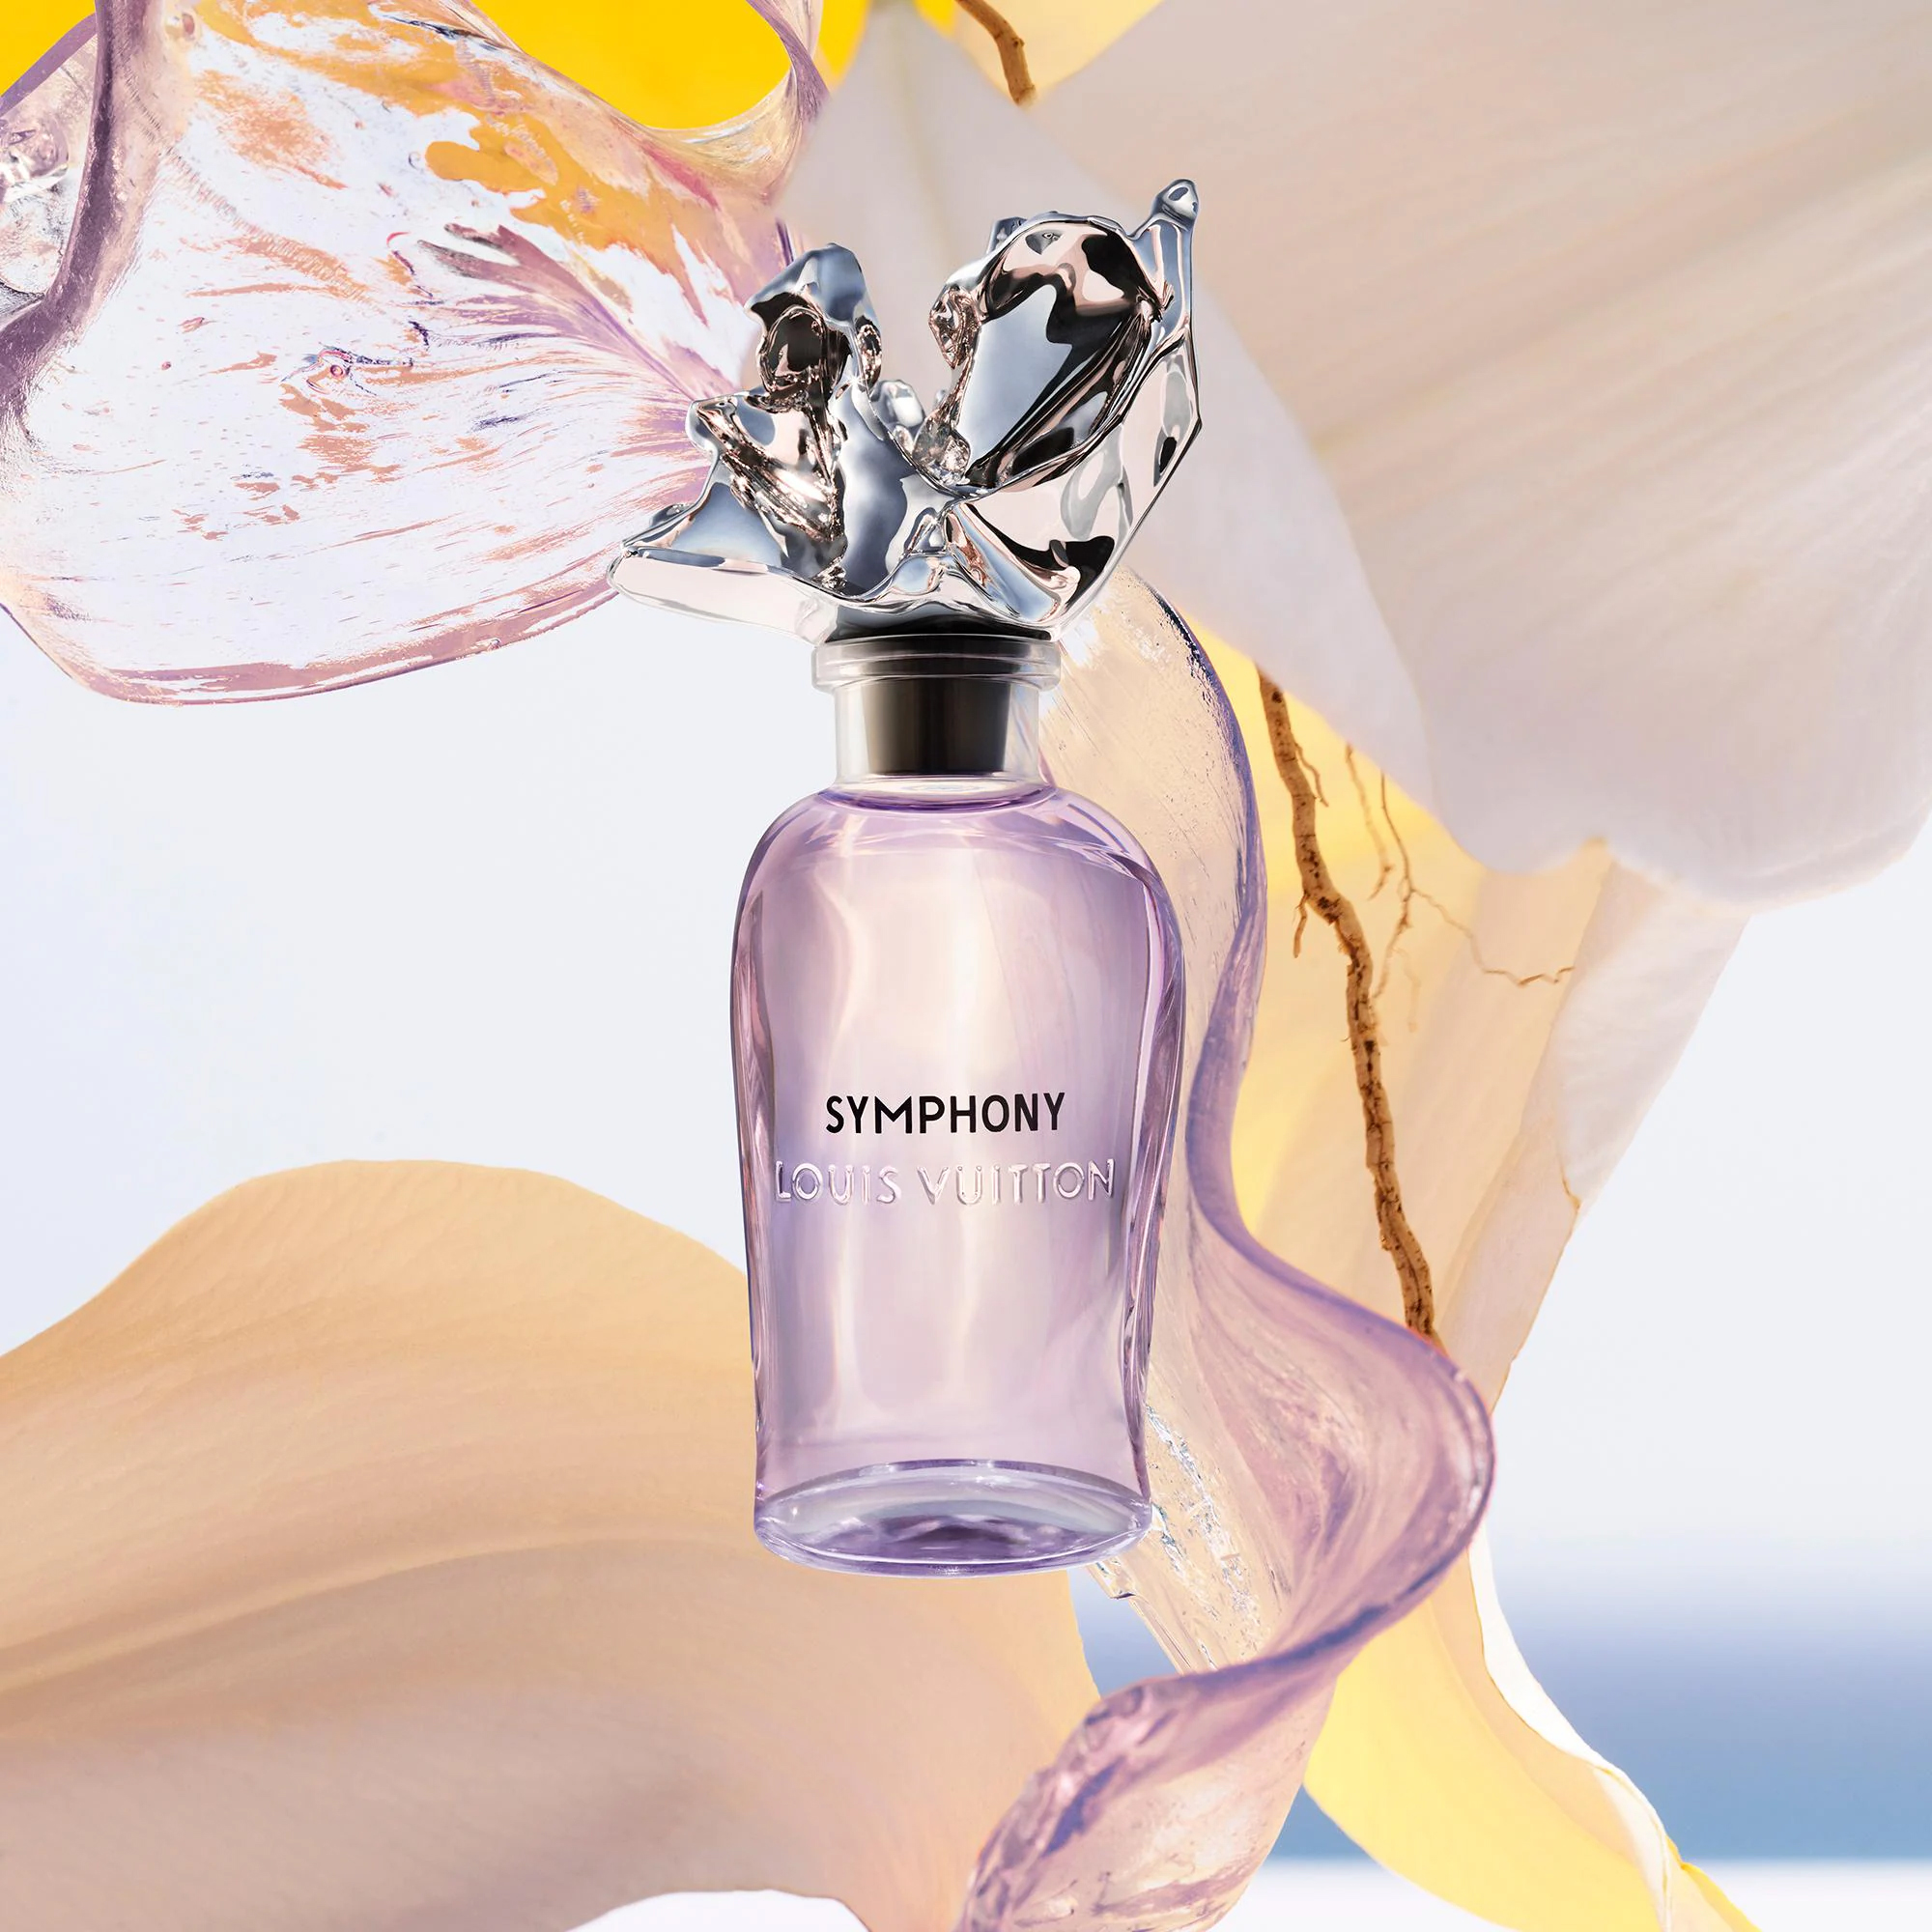 Louis Vuitton Symphony 100ml - Nước hoa chính hãng 100% nhập khẩu Pháp,  Mỹ…Giá tốt tại Perfume168